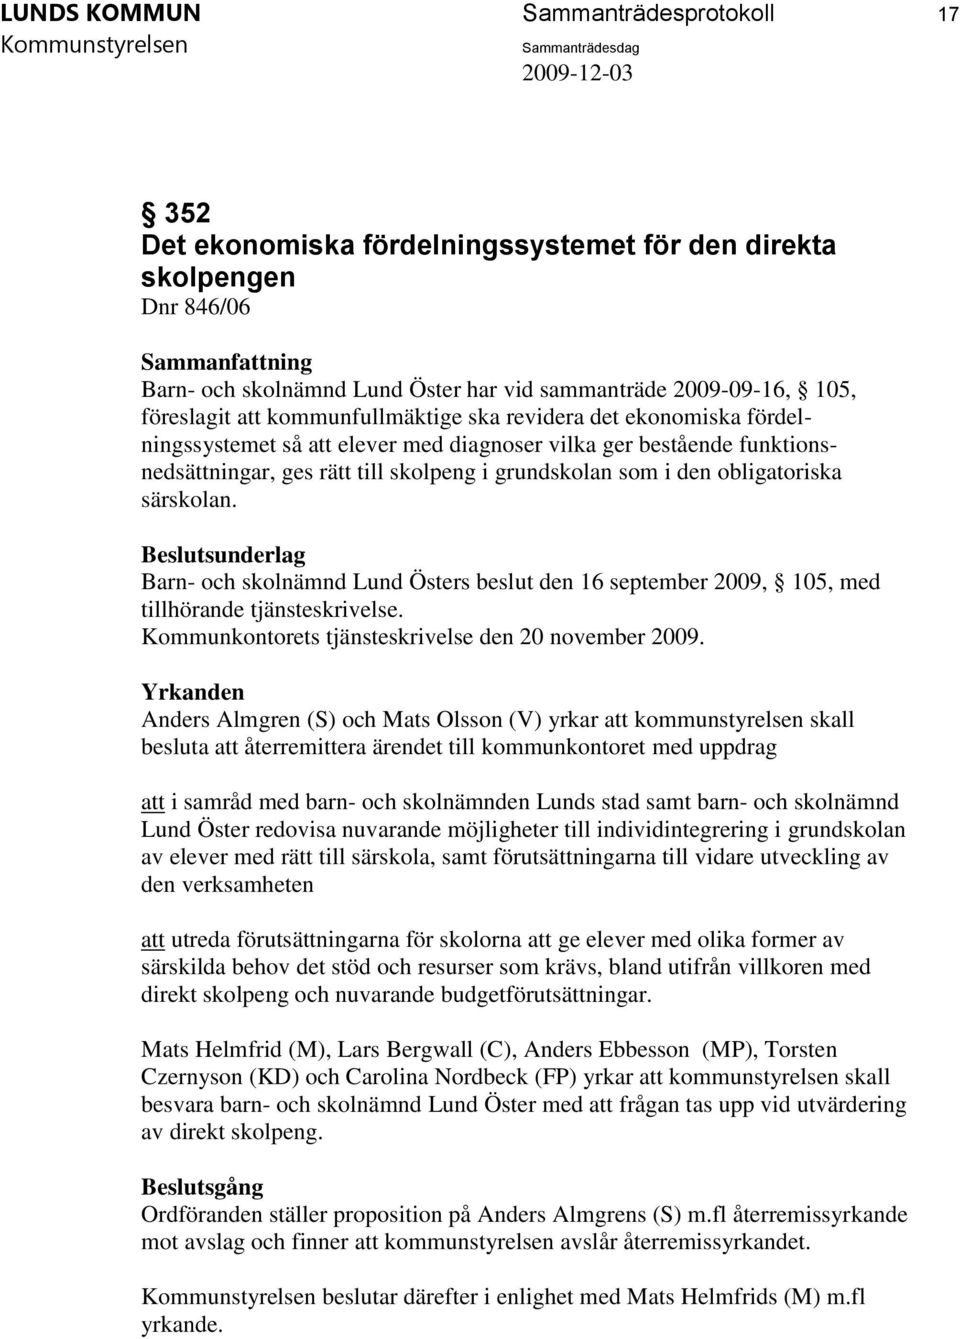 särskolan. Barn- och skolnämnd Lund Östers beslut den 16 september 2009, 105, med tillhörande tjänsteskrivelse. Kommunkontorets tjänsteskrivelse den 20 november 2009.